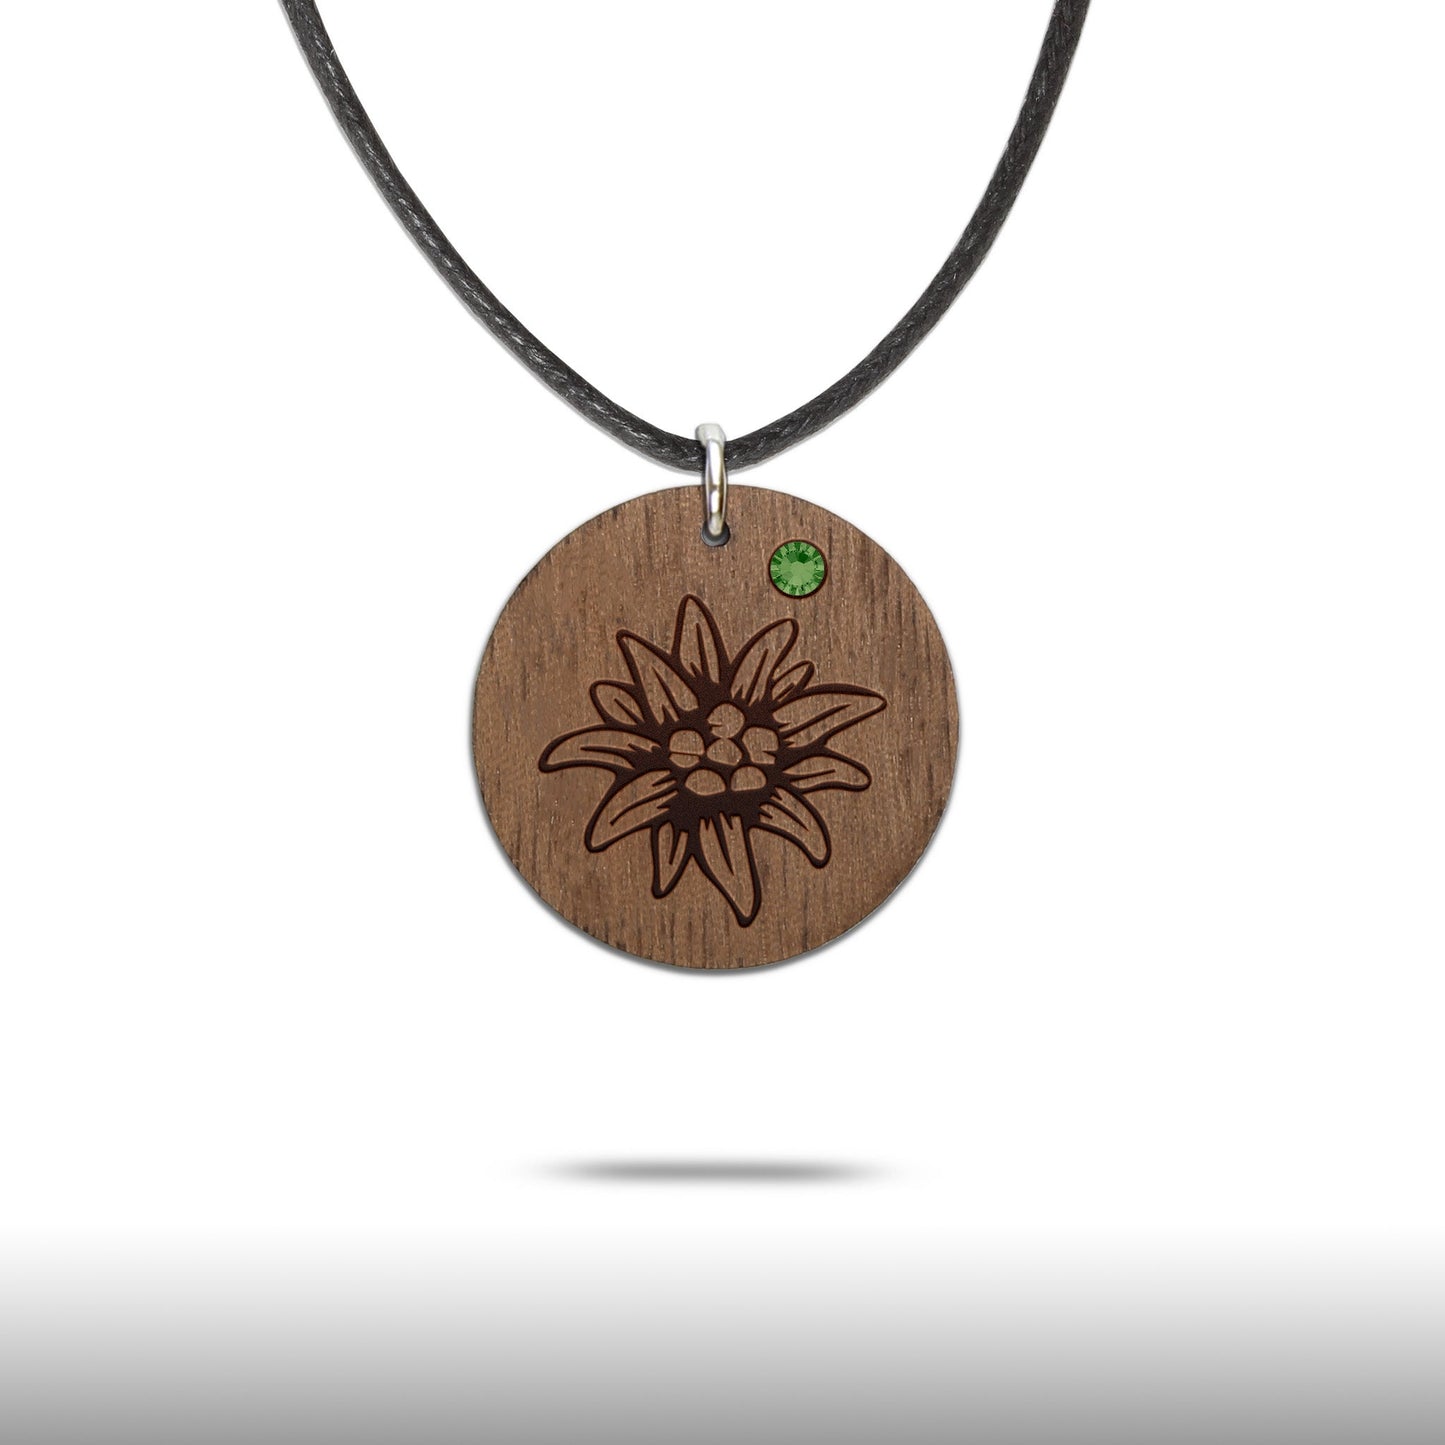 Halskette "Edelweiss" mit Glitzerstein - Nanino Design Onlineshop -